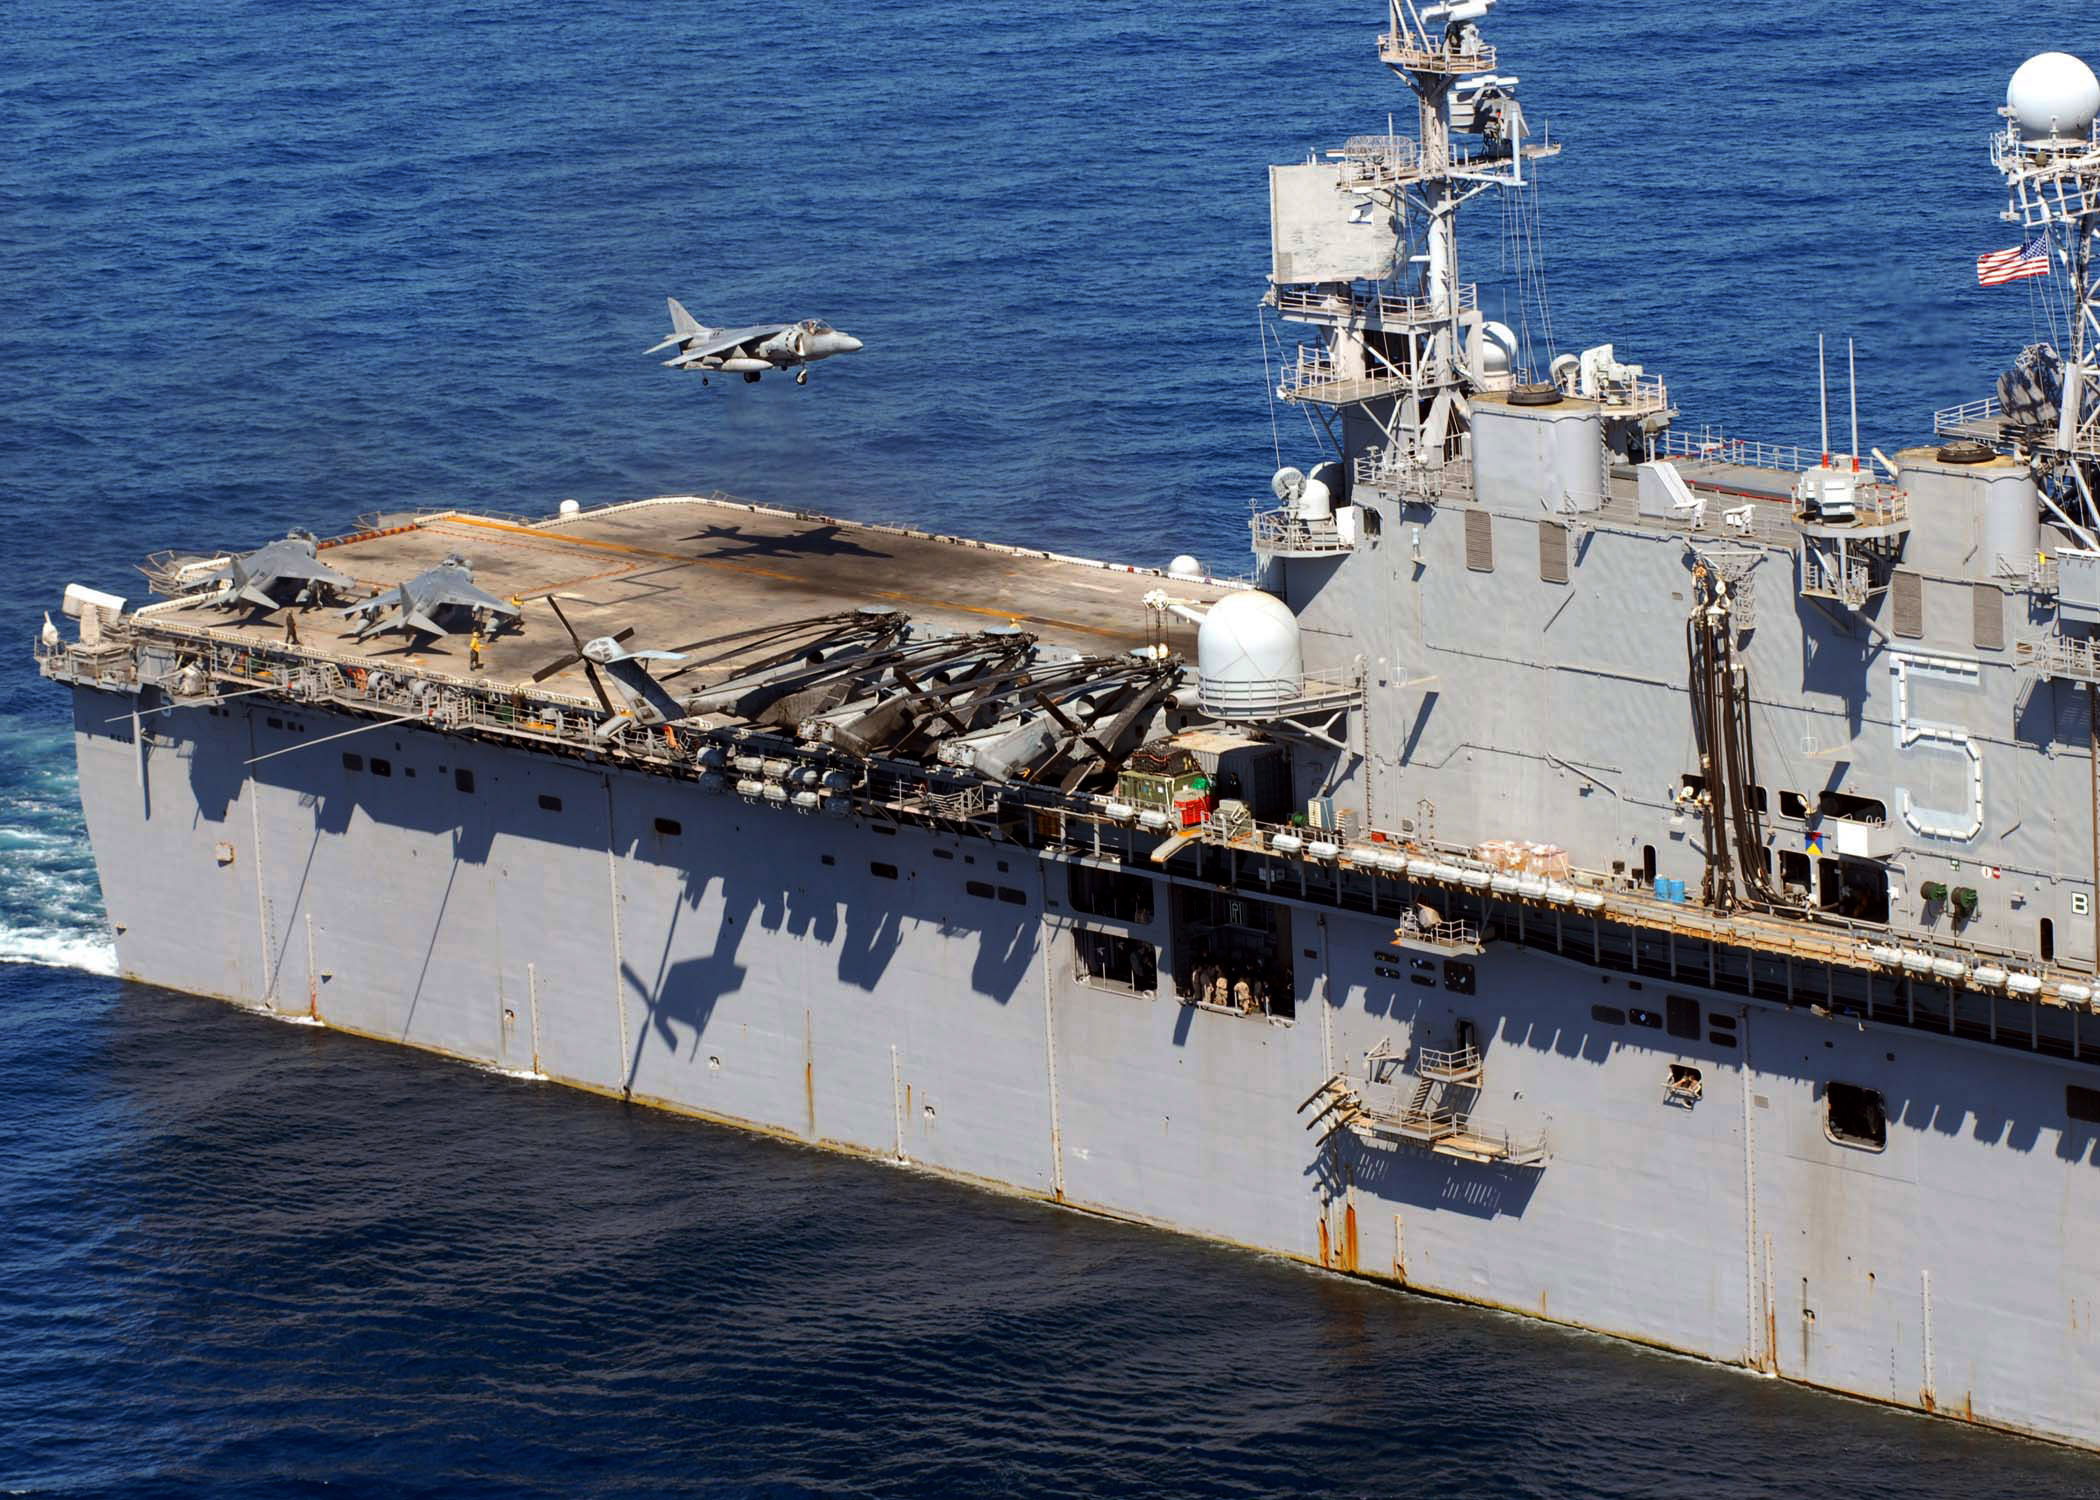 USS_Peleliu_(LHA_5)_in_South_China_Sea_04.jpg